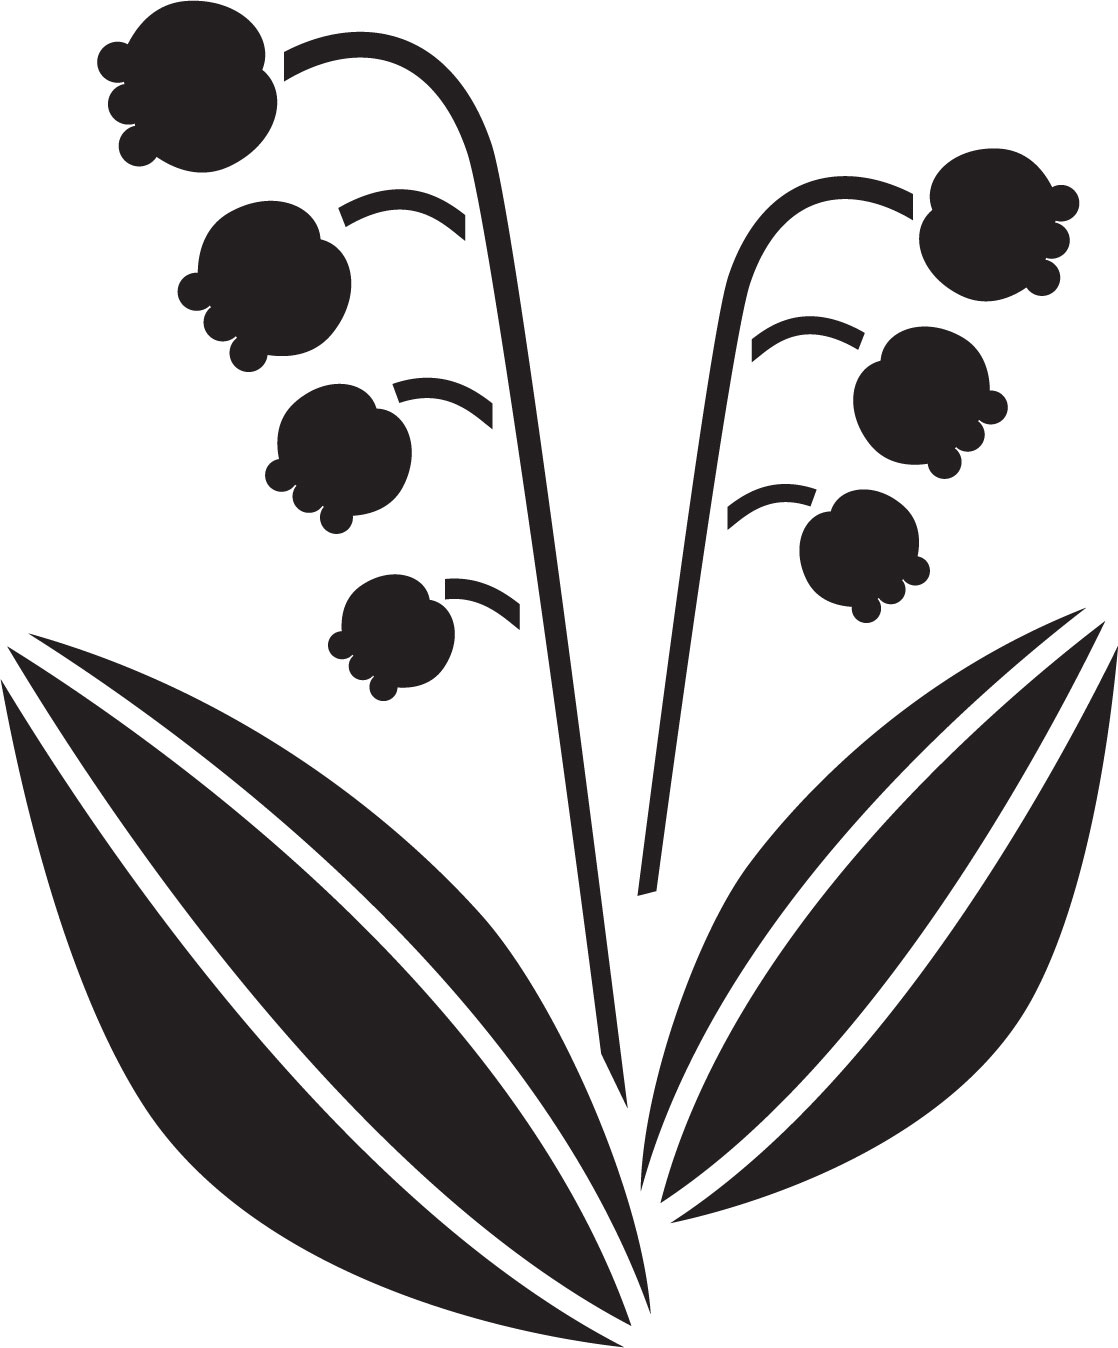 花のイラスト フリー素材 白黒 モノクロno 227 白黒 鈴蘭 葉